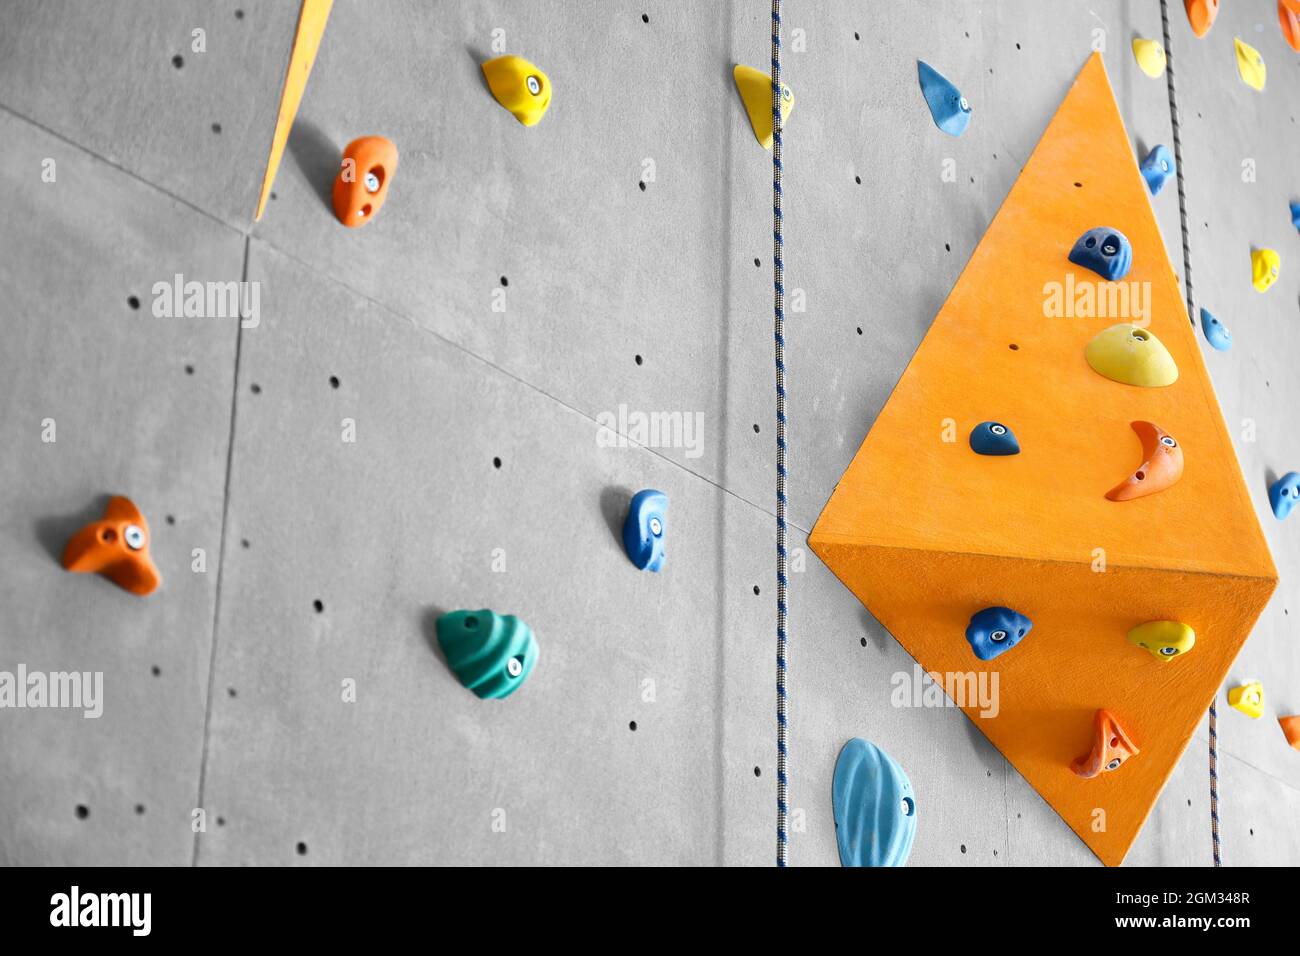 Graue Wand mit Klettern hält und Seile in der Turnhalle Stockfotografie -  Alamy